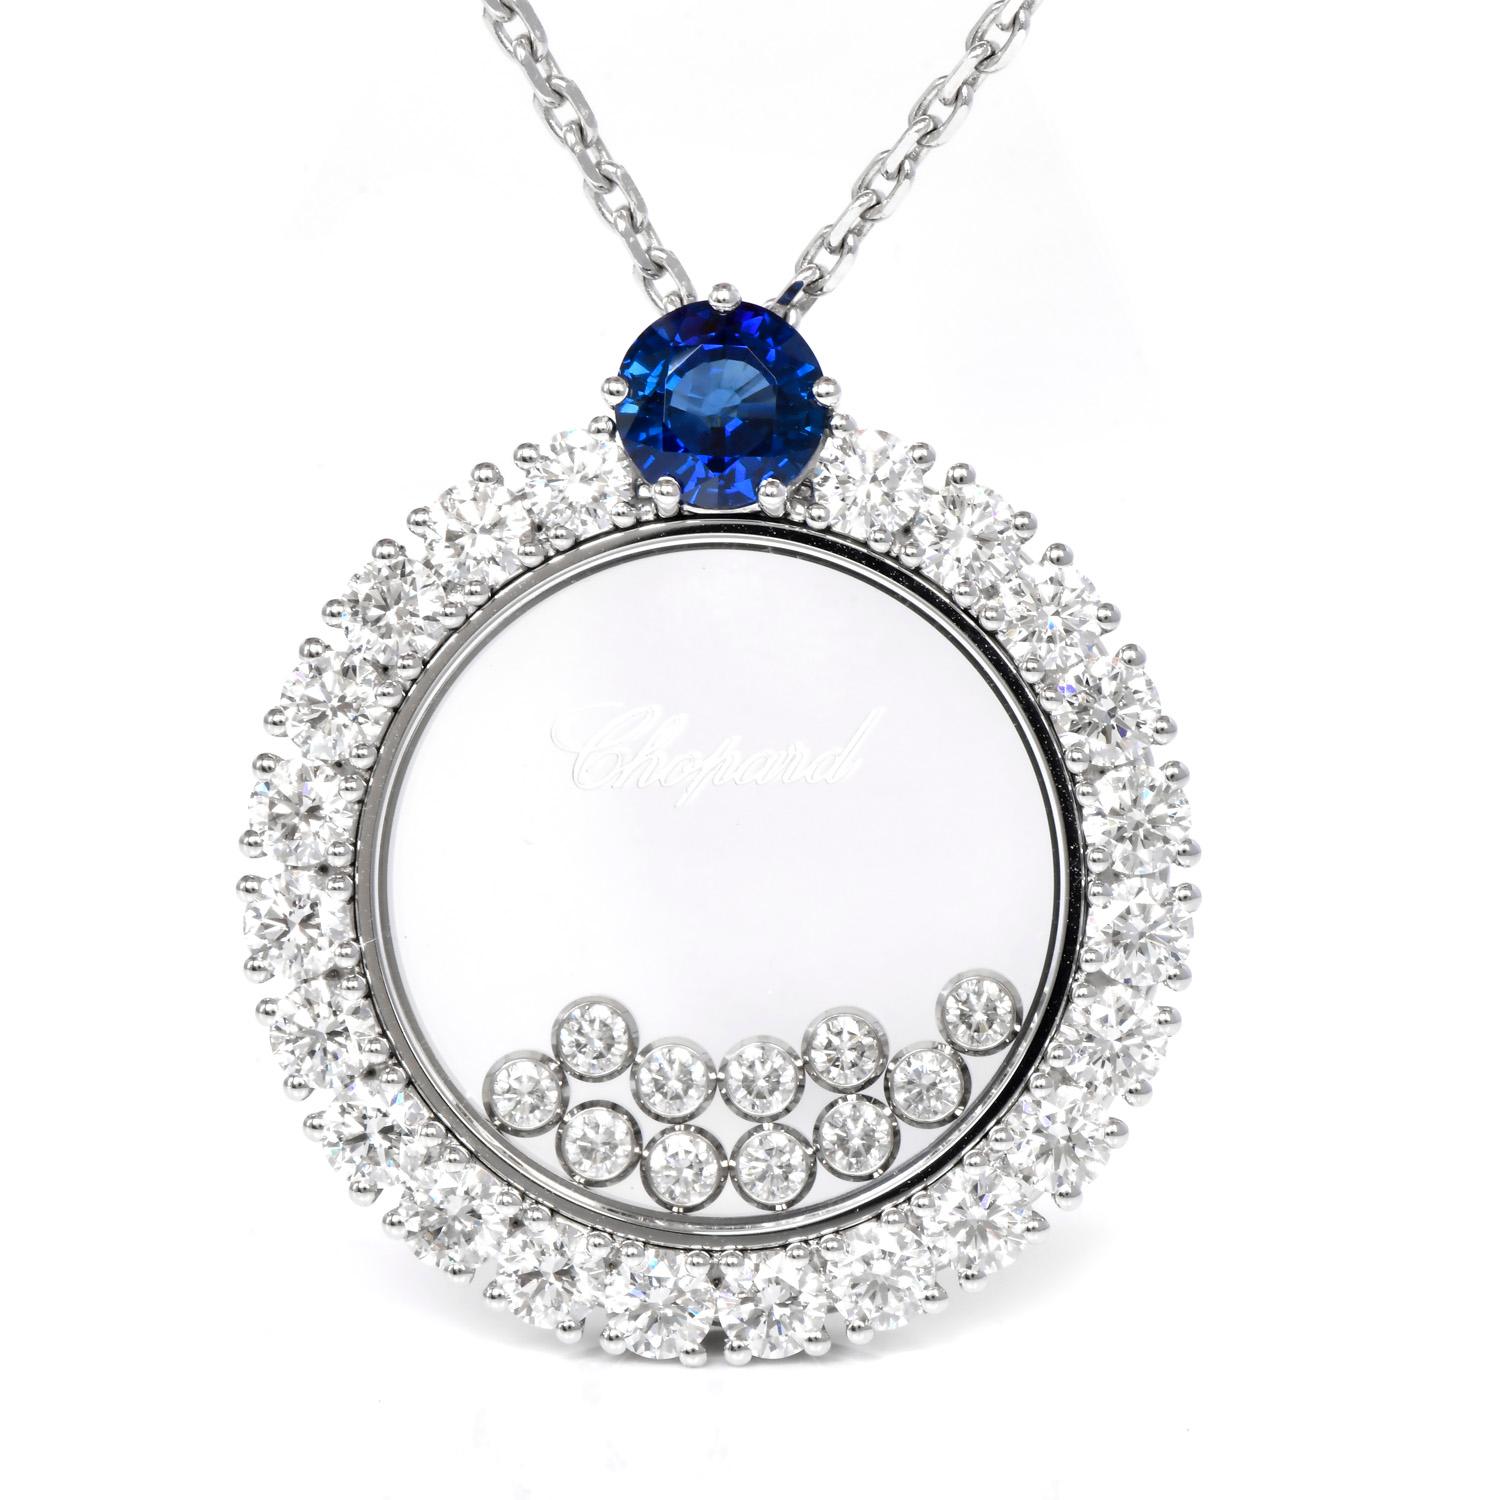 Cet exquis collier Chopard Happy Diamonds de la collection Icons est l'équilibre parfait entre le luxe et la vie quotidienne,

Le collier à diamants flottants est finement confectionné dans un luxueux or blanc 18 carats.

Ce collier comprend un